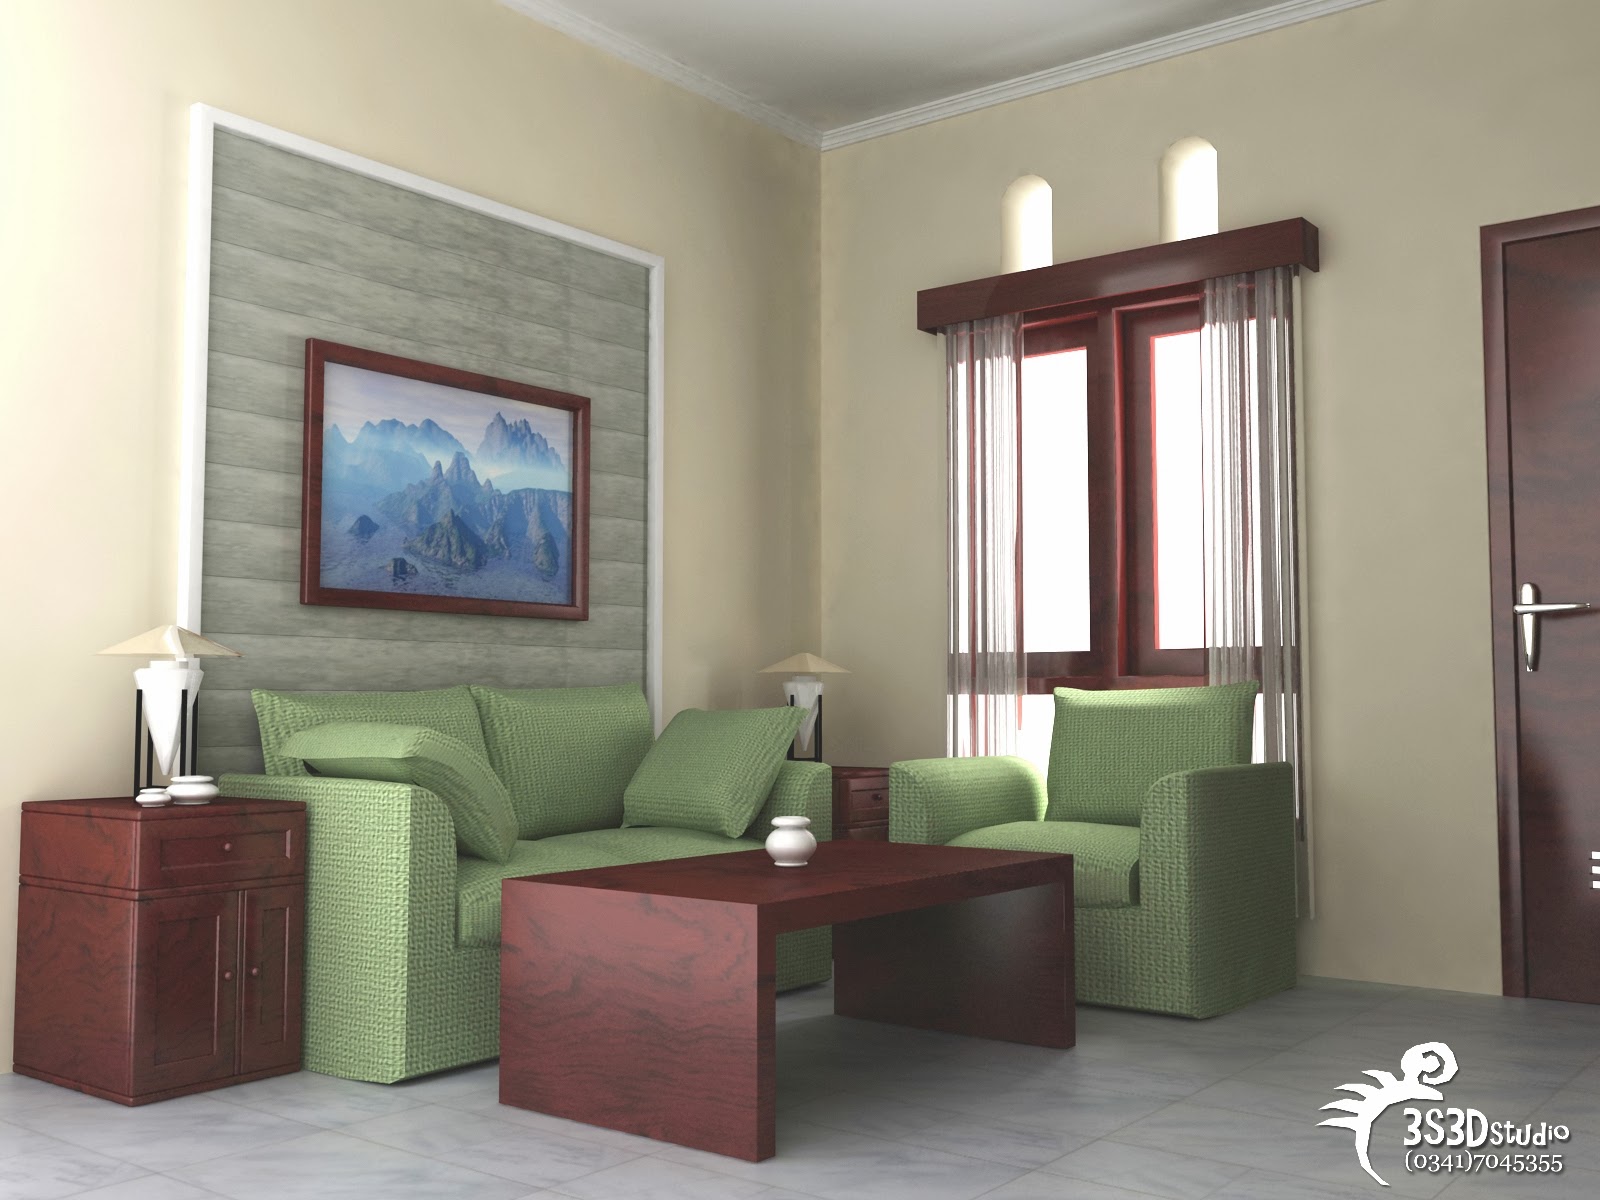 Ruang tamu cantik bertema sederhana | Update Desain Rumah